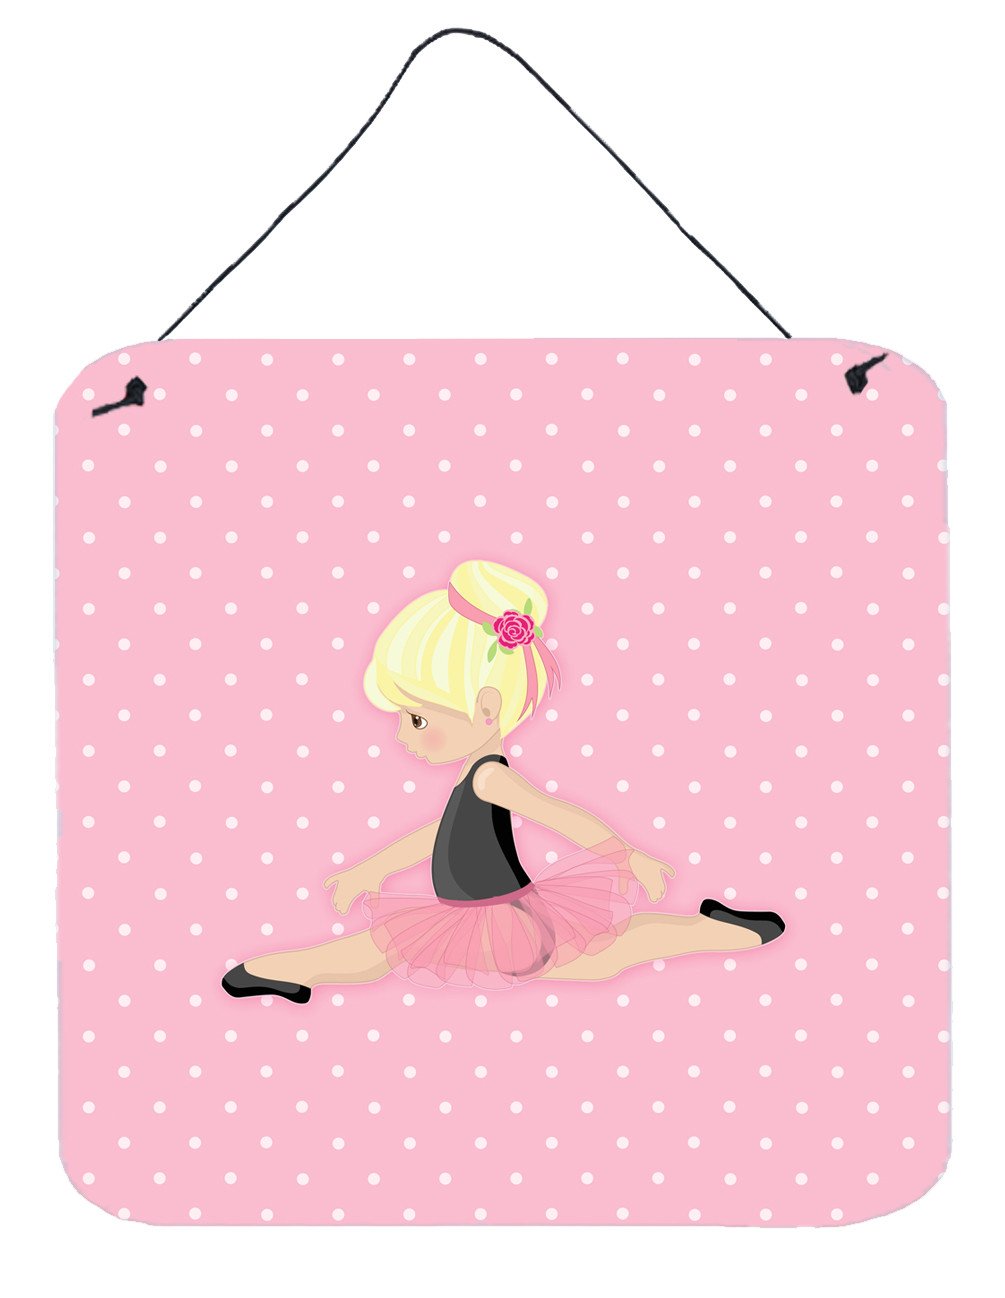 Ballerina Blonde Jete Wall or Door Hanging Prints BB5166DS66 by Caroline's Treasures